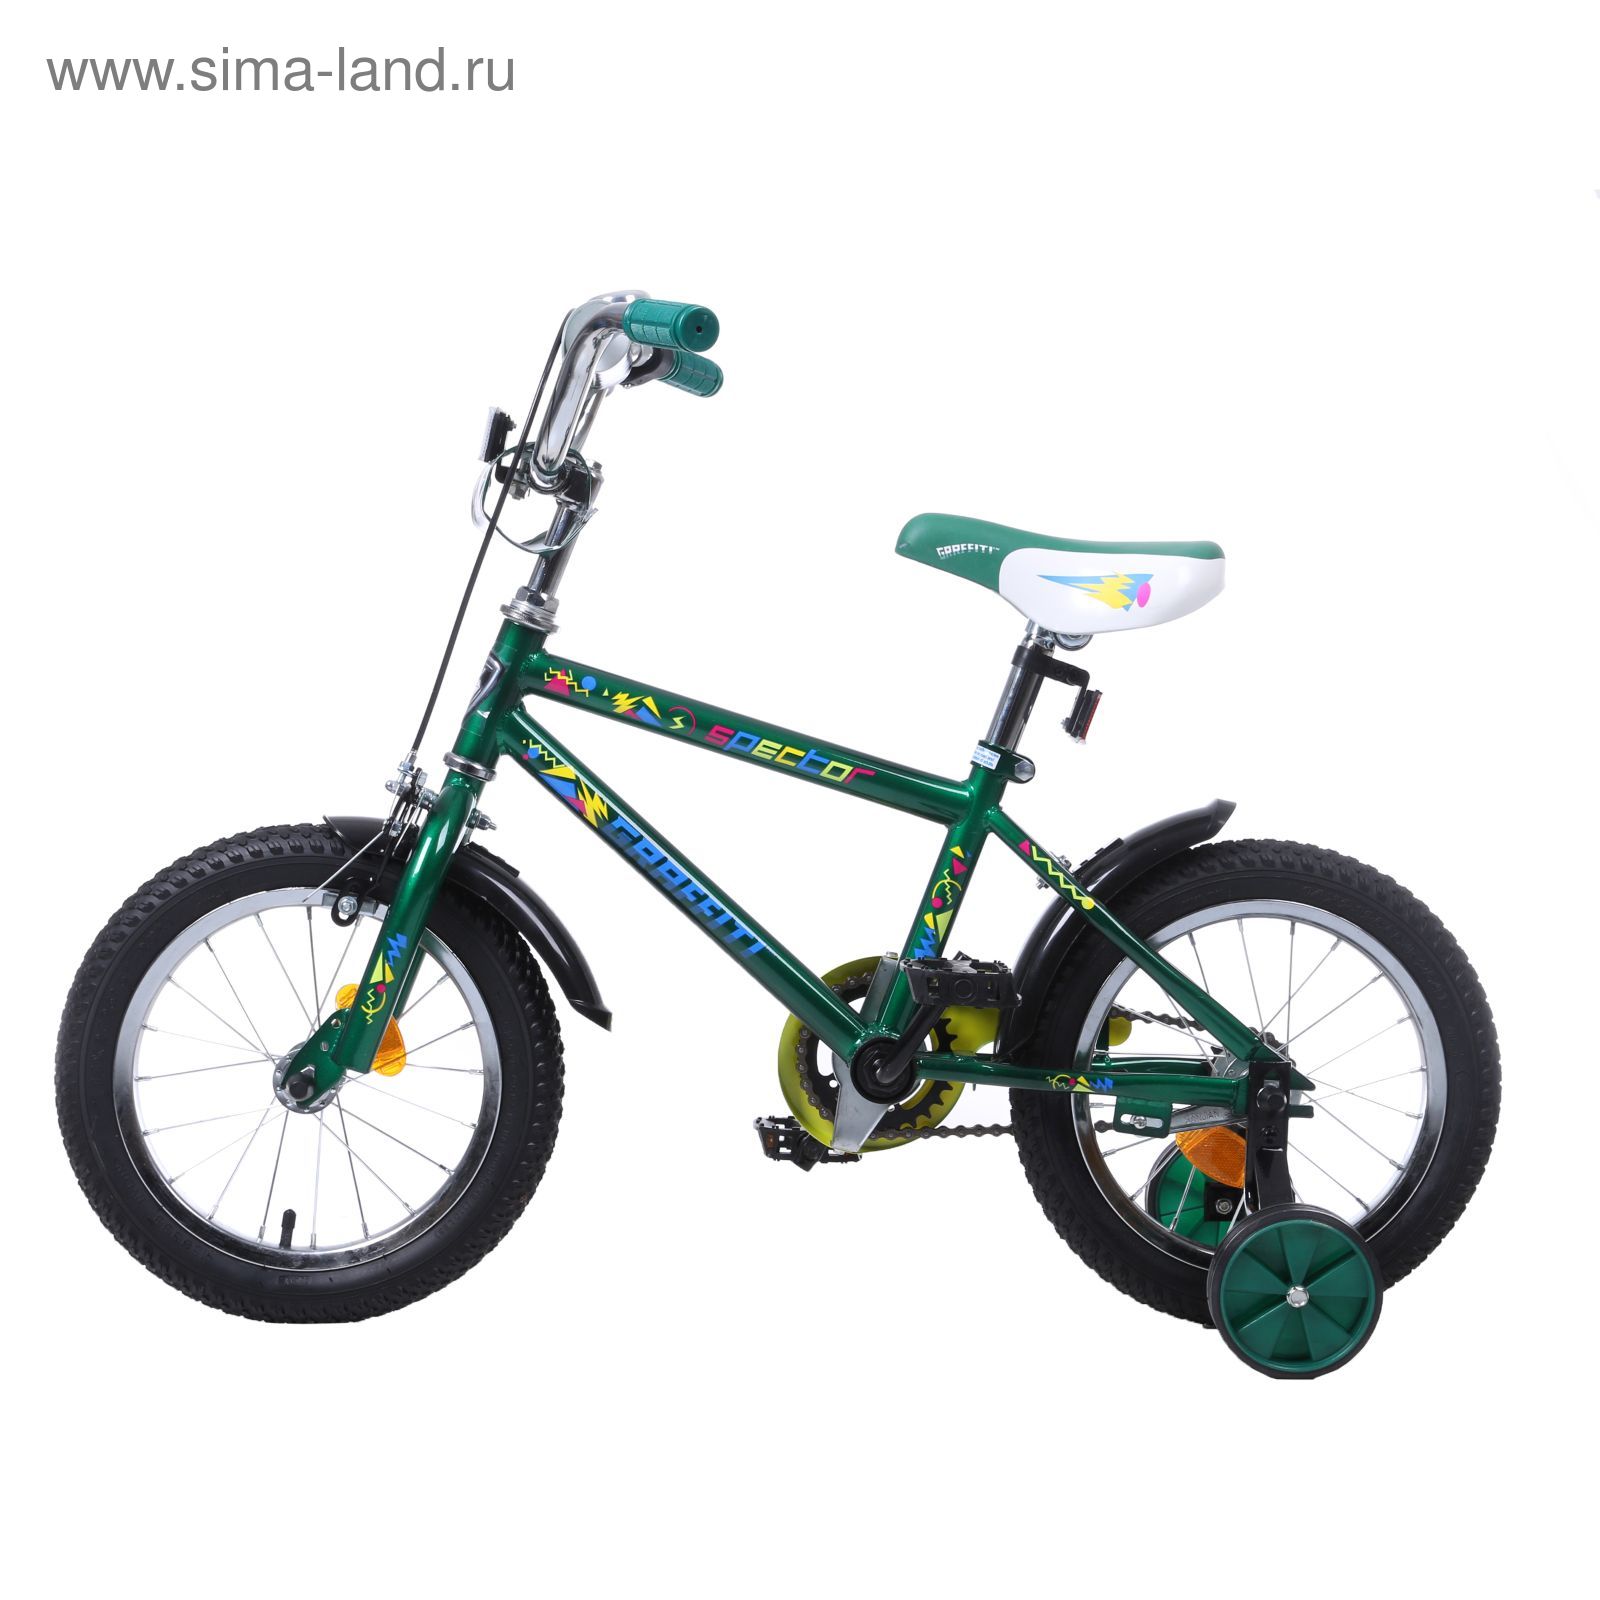 Велосипед 14" GRAFFITI Spector, 2017, цвет зелёный